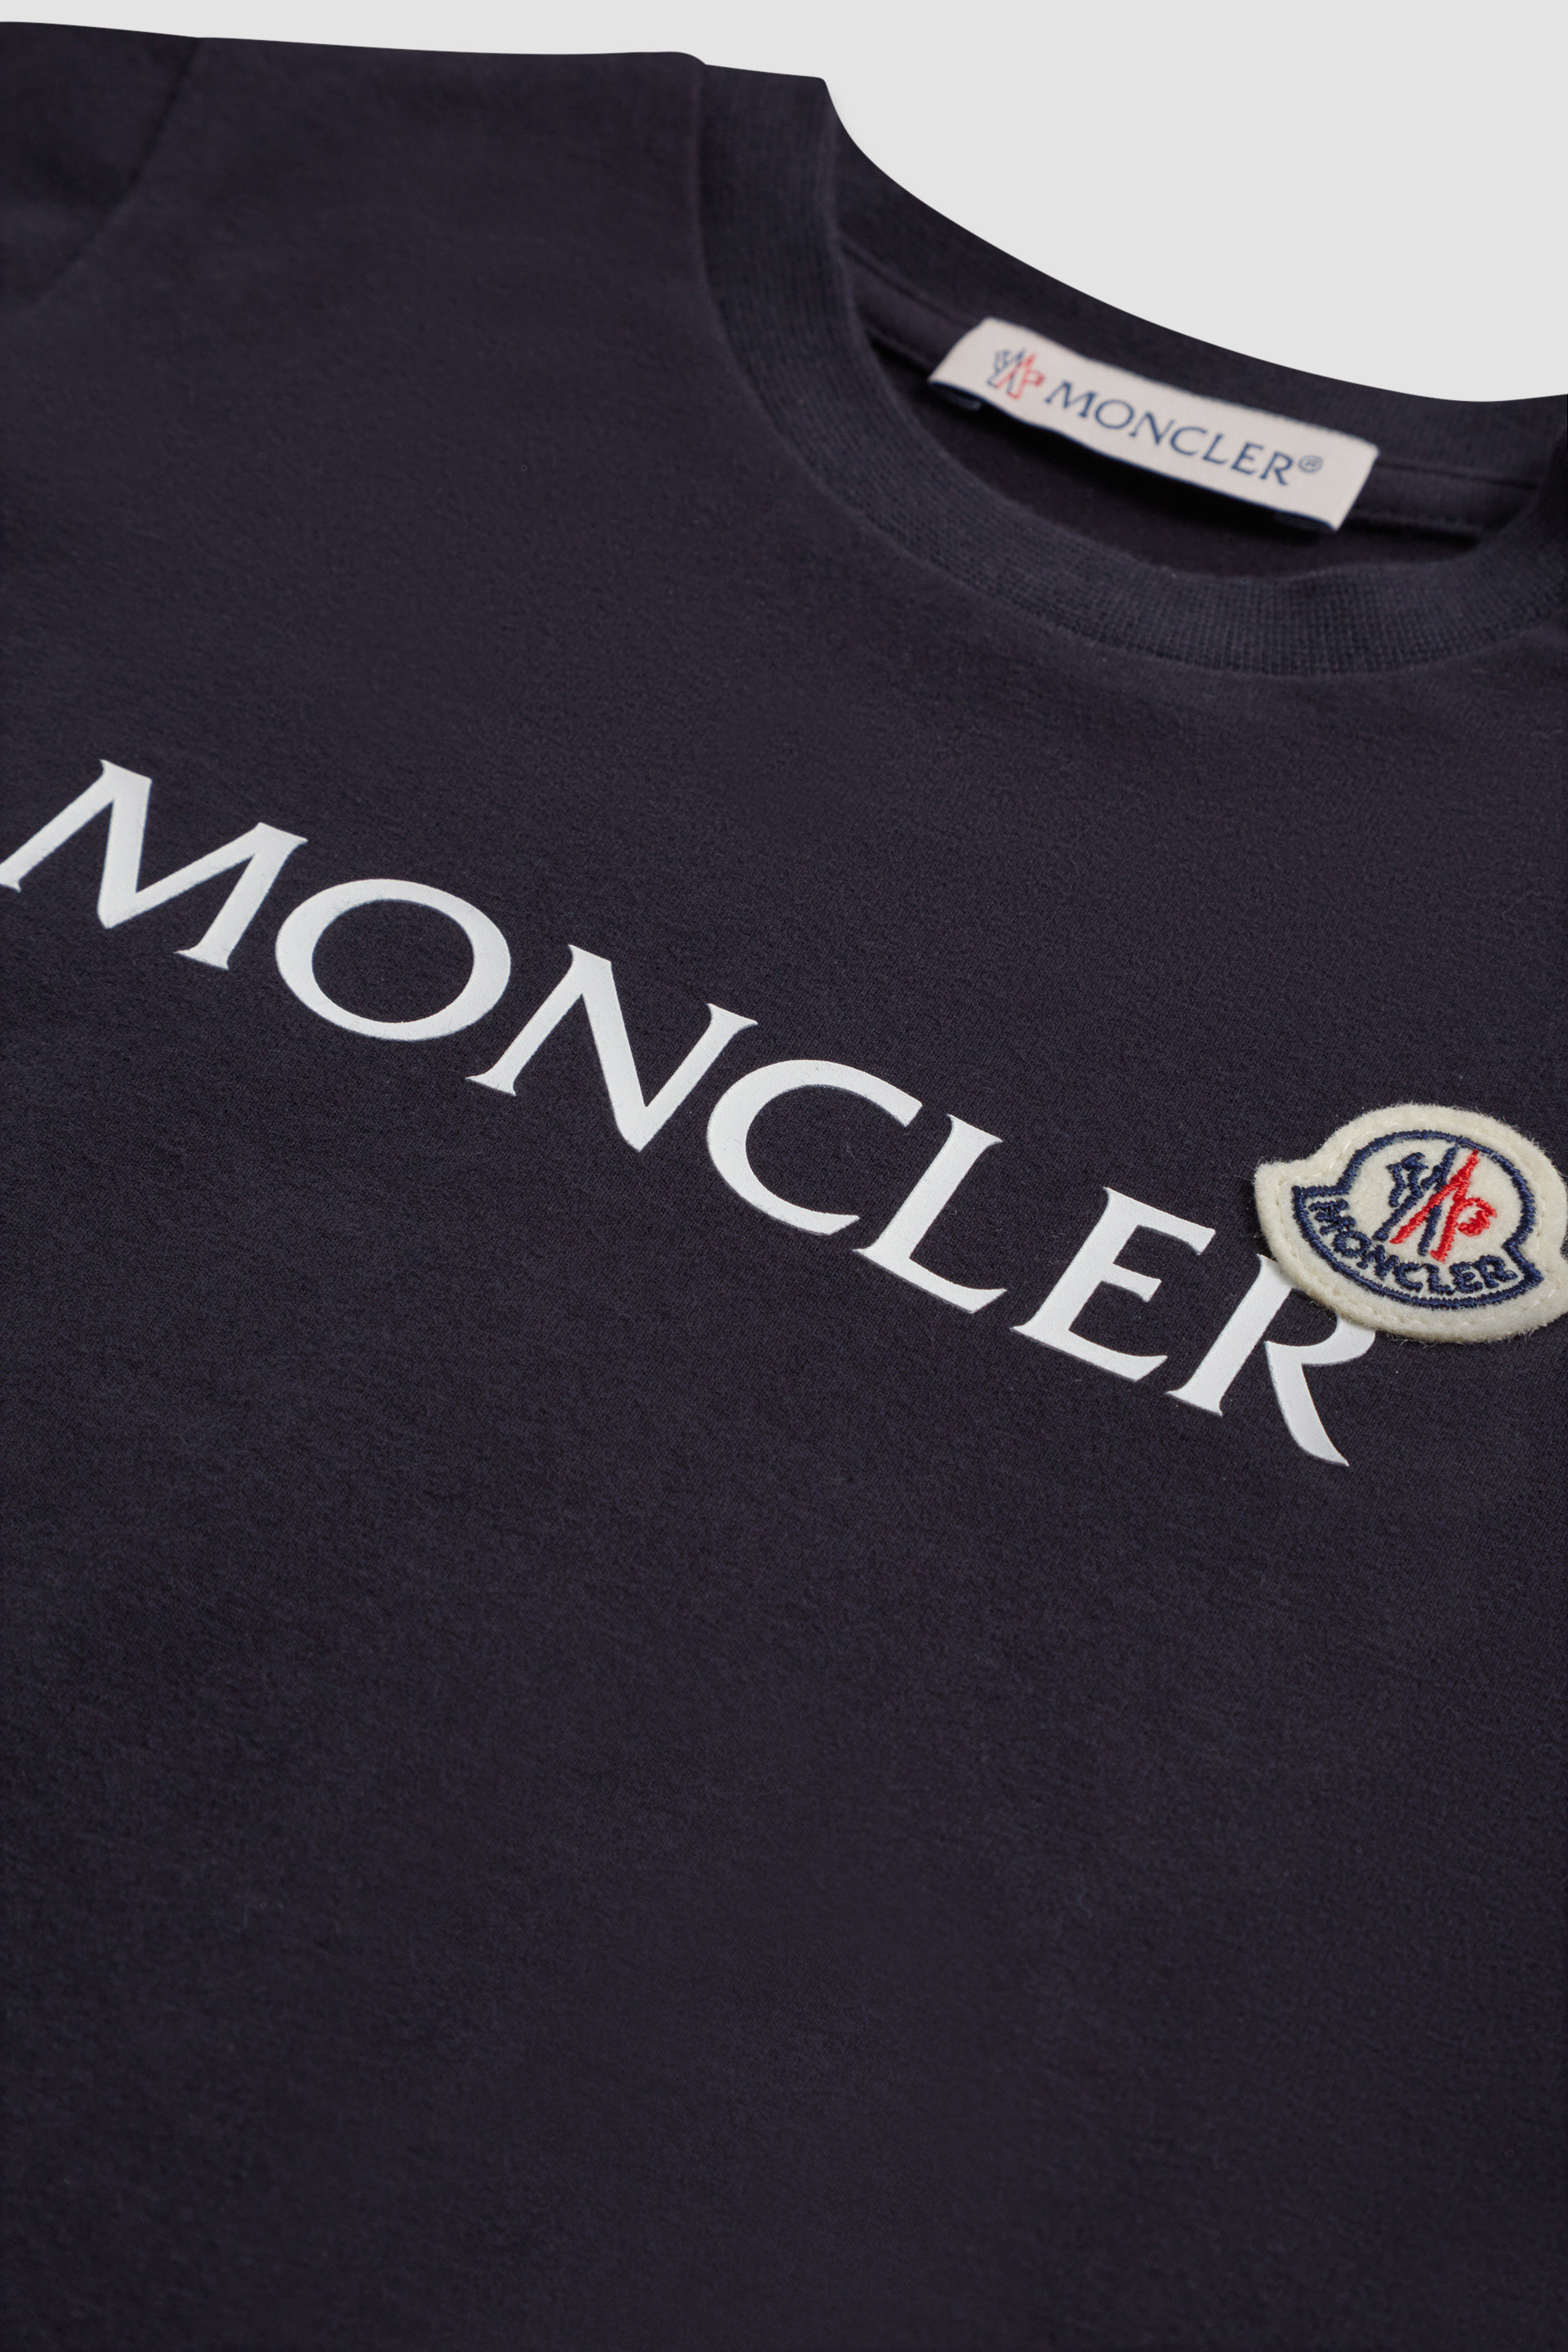 【セール新品】●新品/正規品● MONCLER Kids 袖ロゴ ネットパイピングTシャツ Tシャツ/カットソー